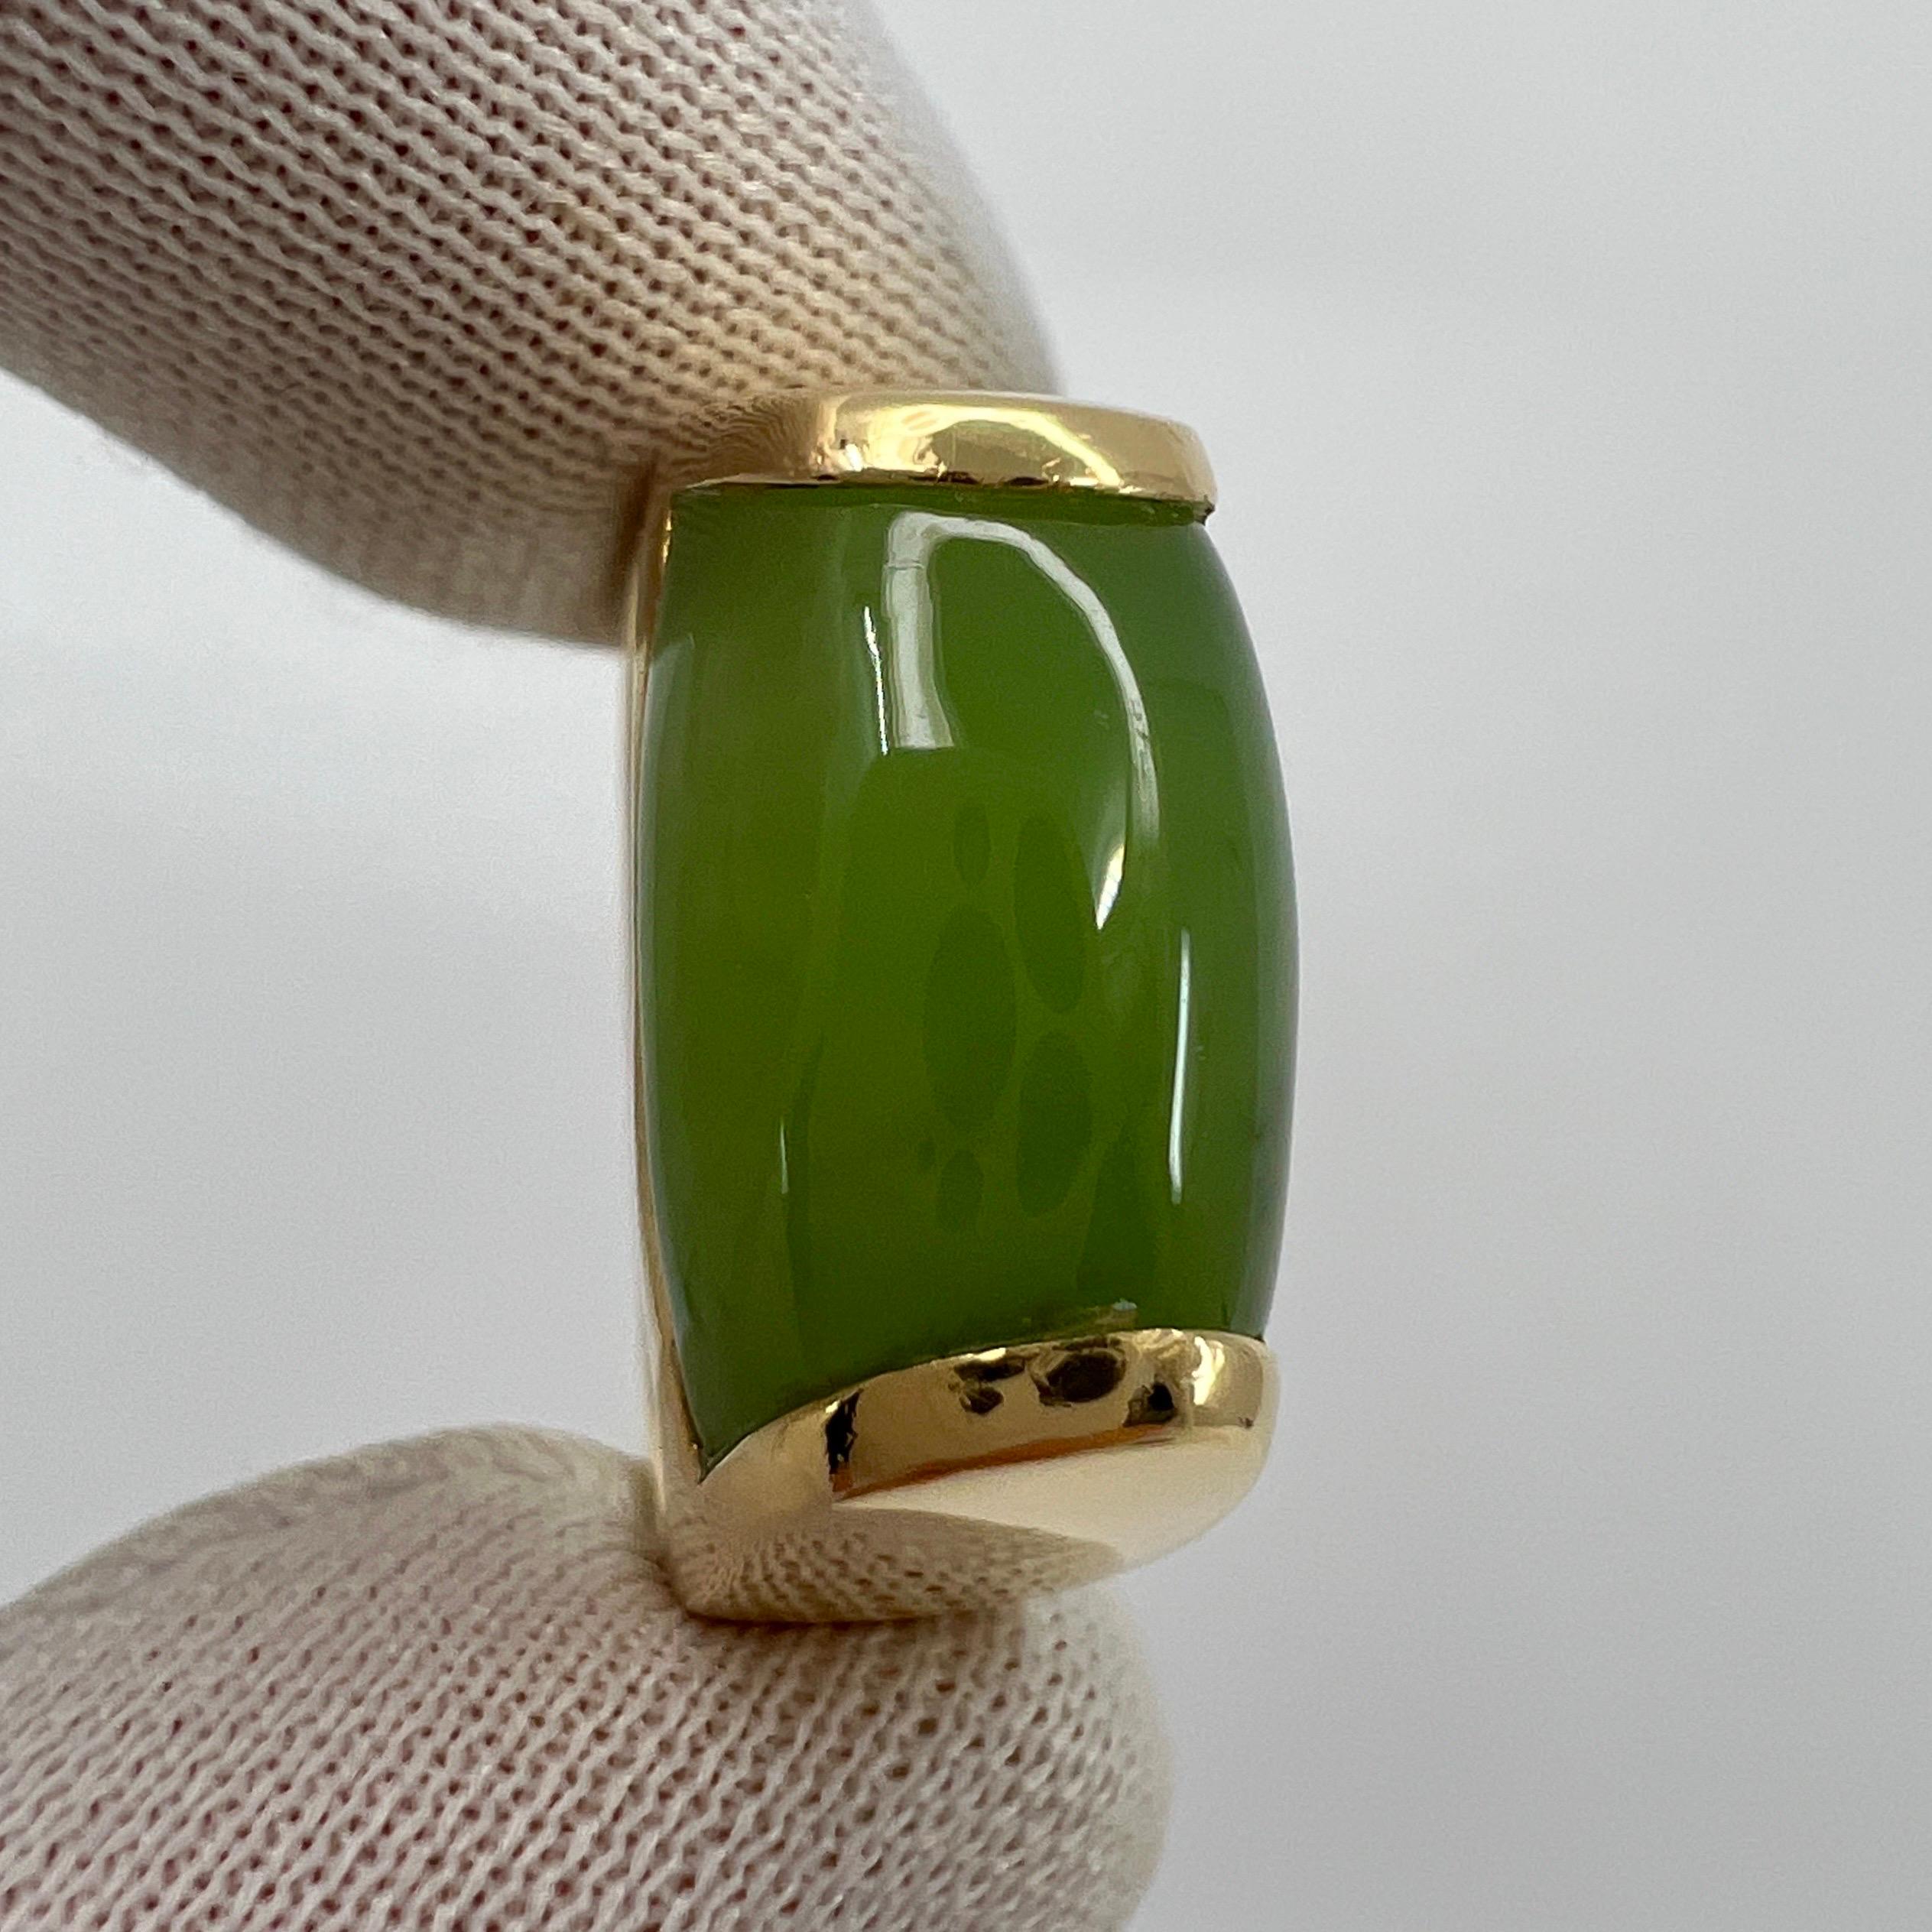 Rare Bvlgari Bulgari Green Jade Tronchetto 18 Karat Yellow Gold Ring with Box 1